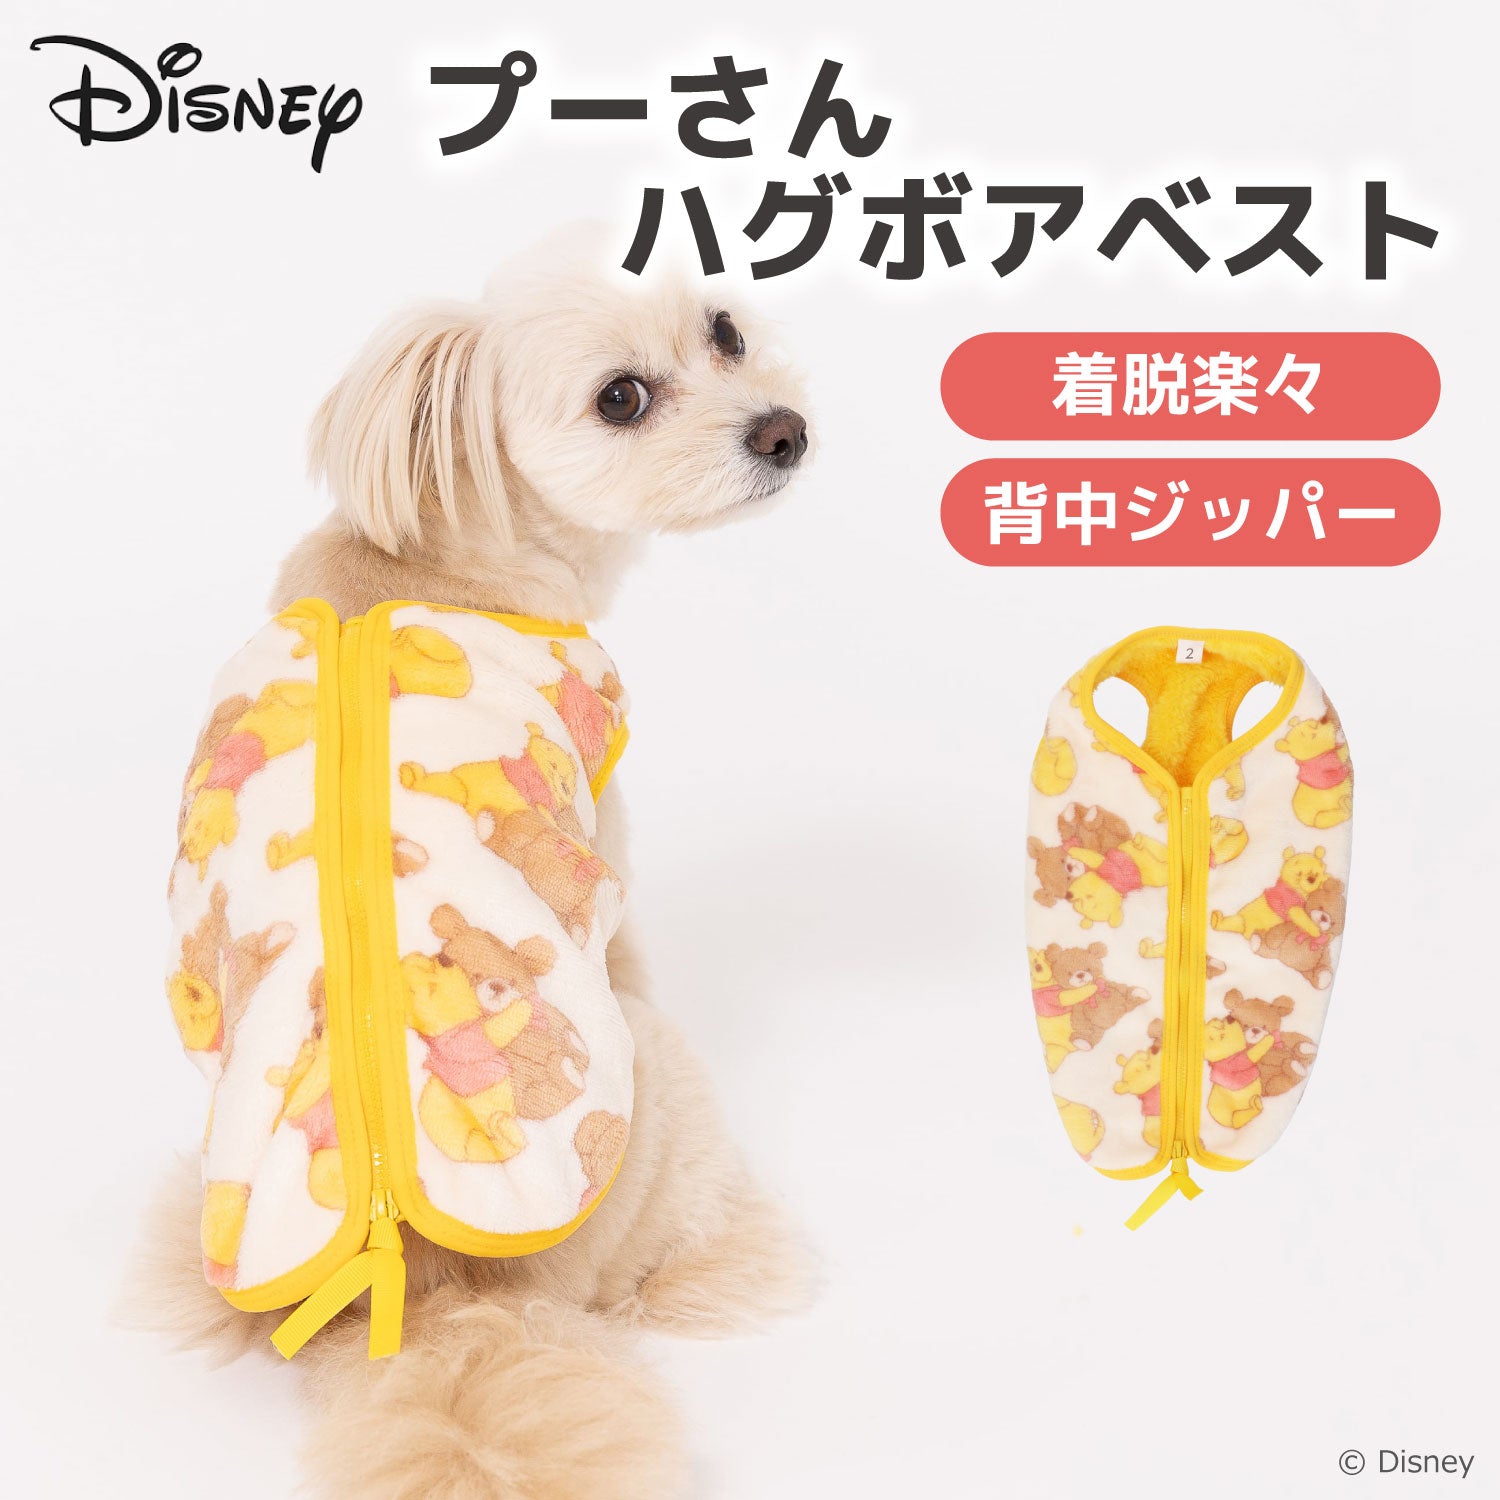 【新着商品】スリーアローズ Disney TOY STORYクールベッド 犬猫用